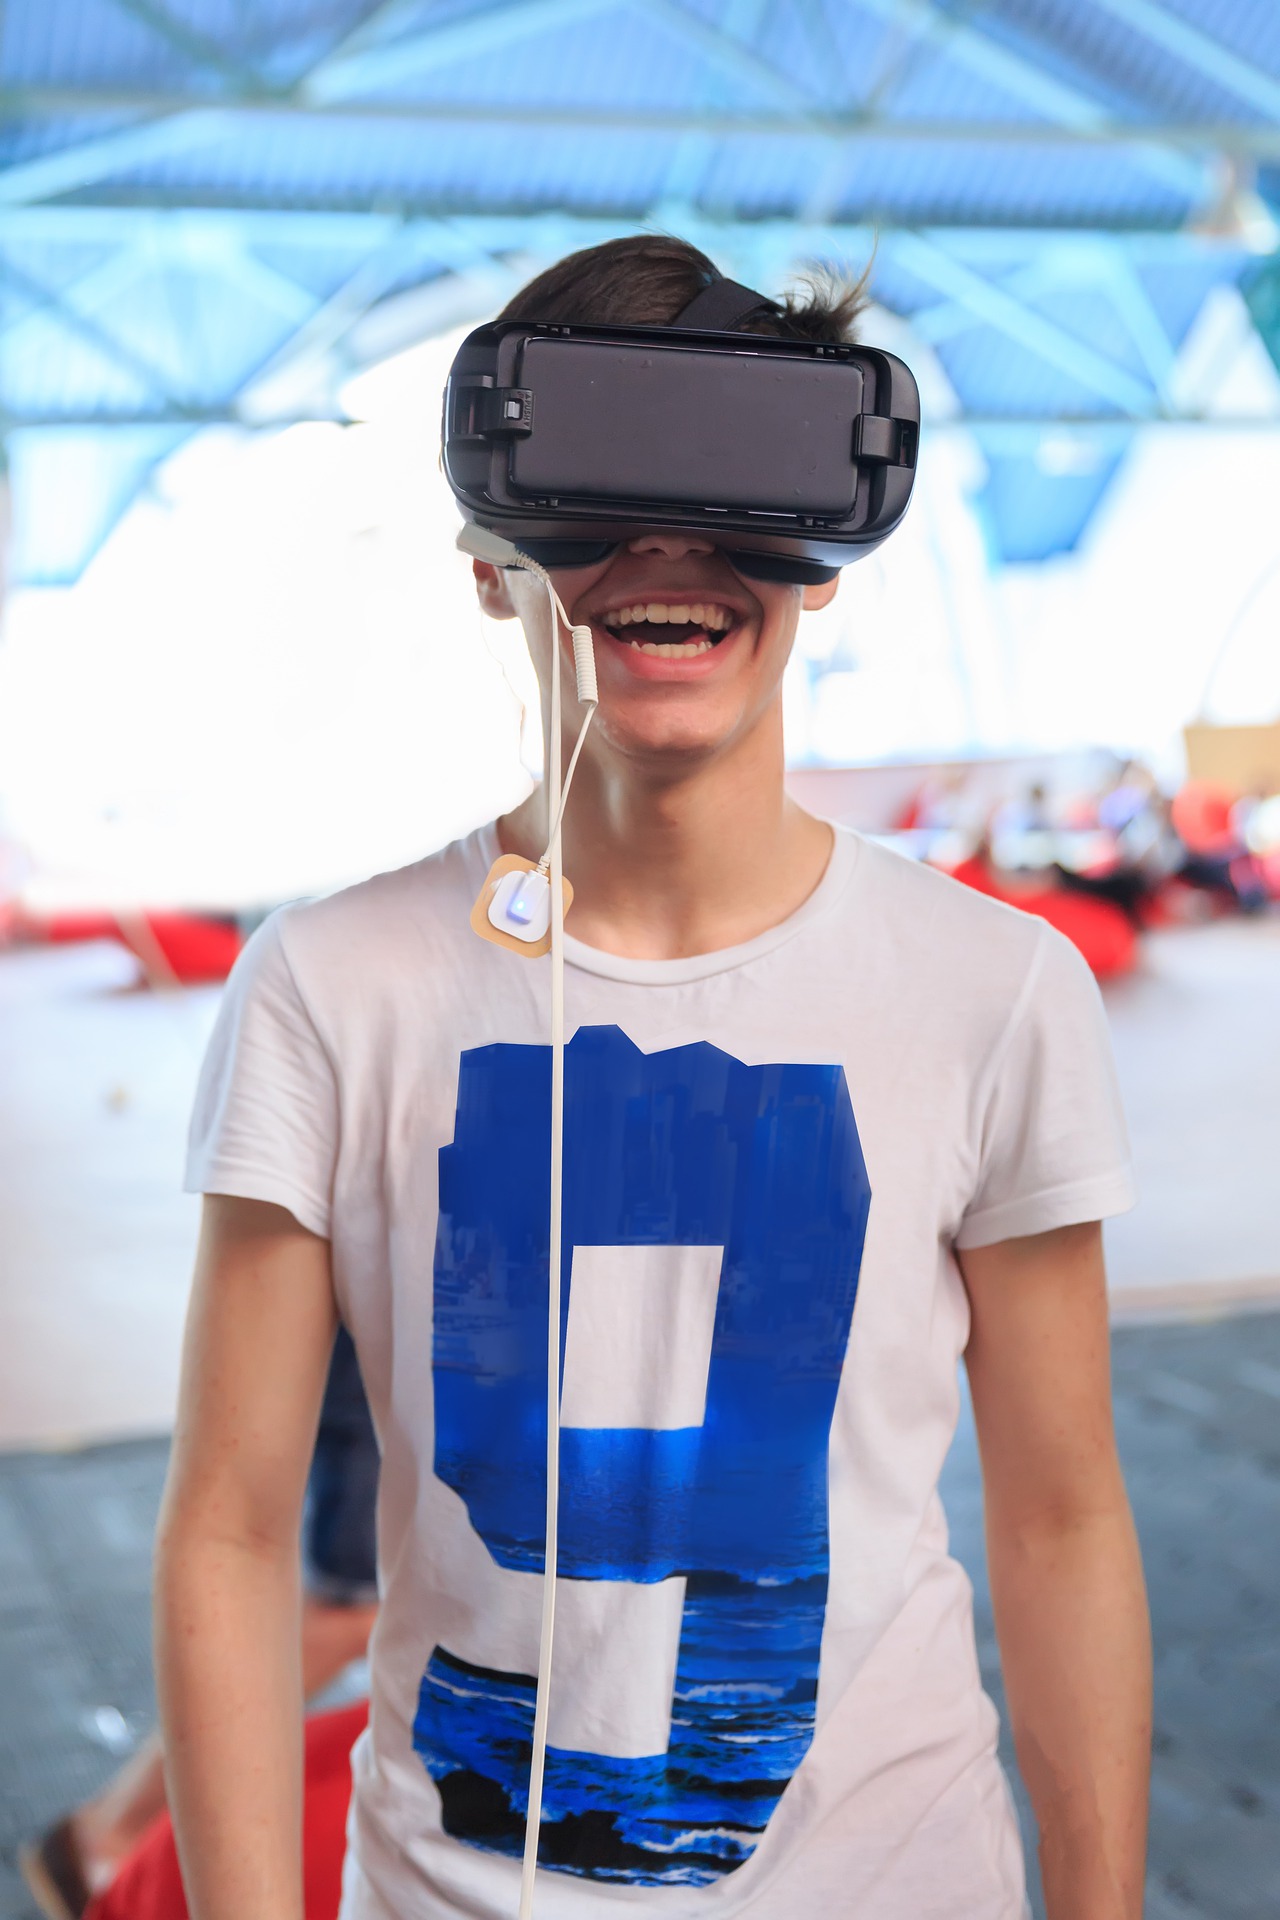 behang Il tragedie Tips voor het kopen van een VR-bril - Sanne